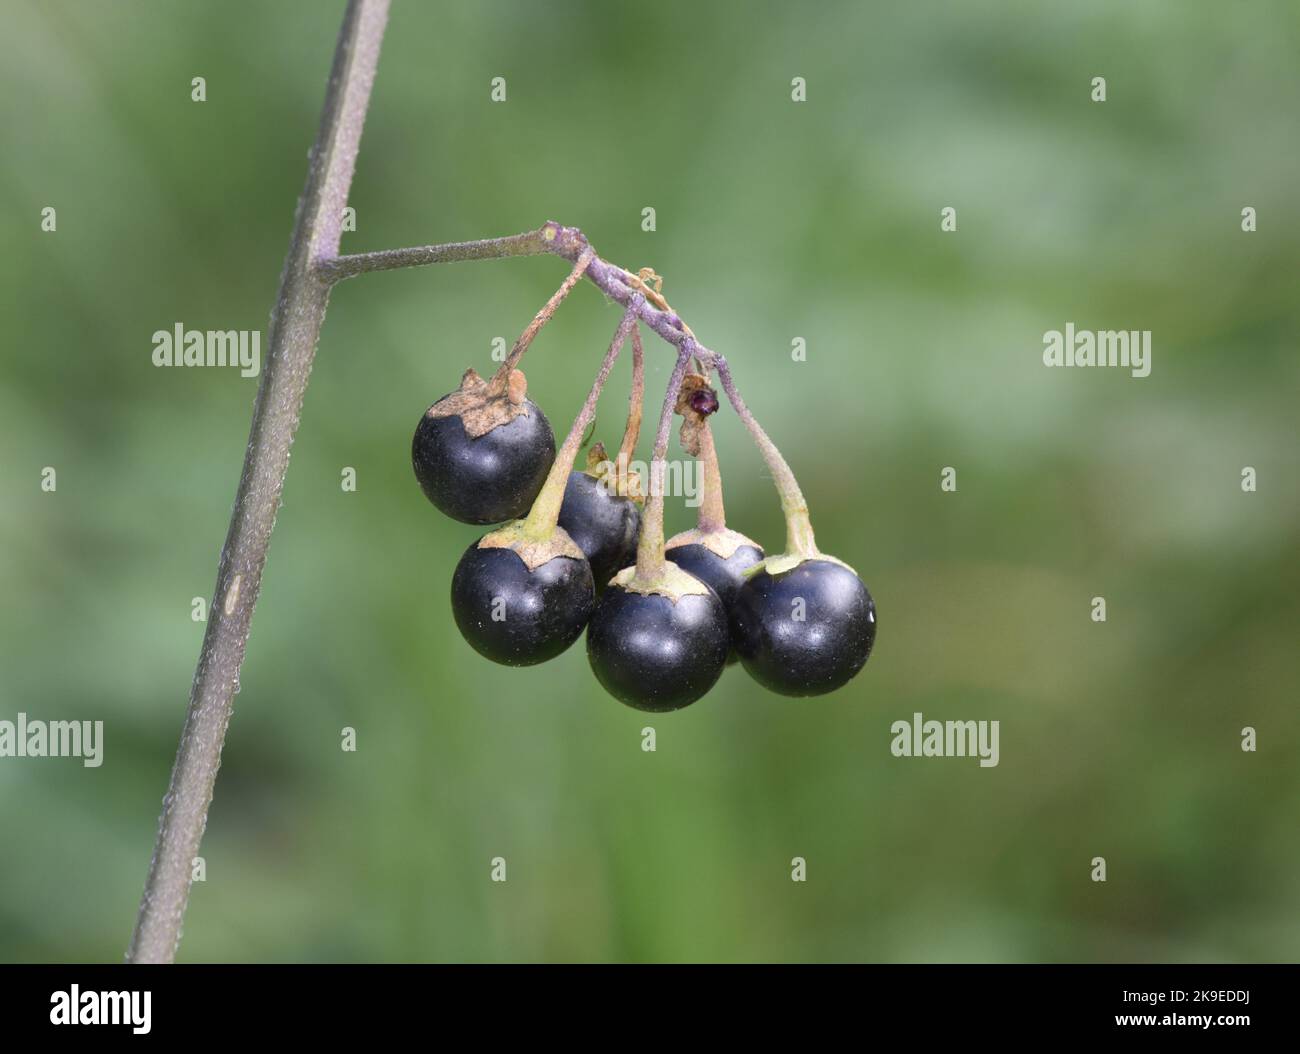 Black Nightshade - Solanum nigrum Stock Photo